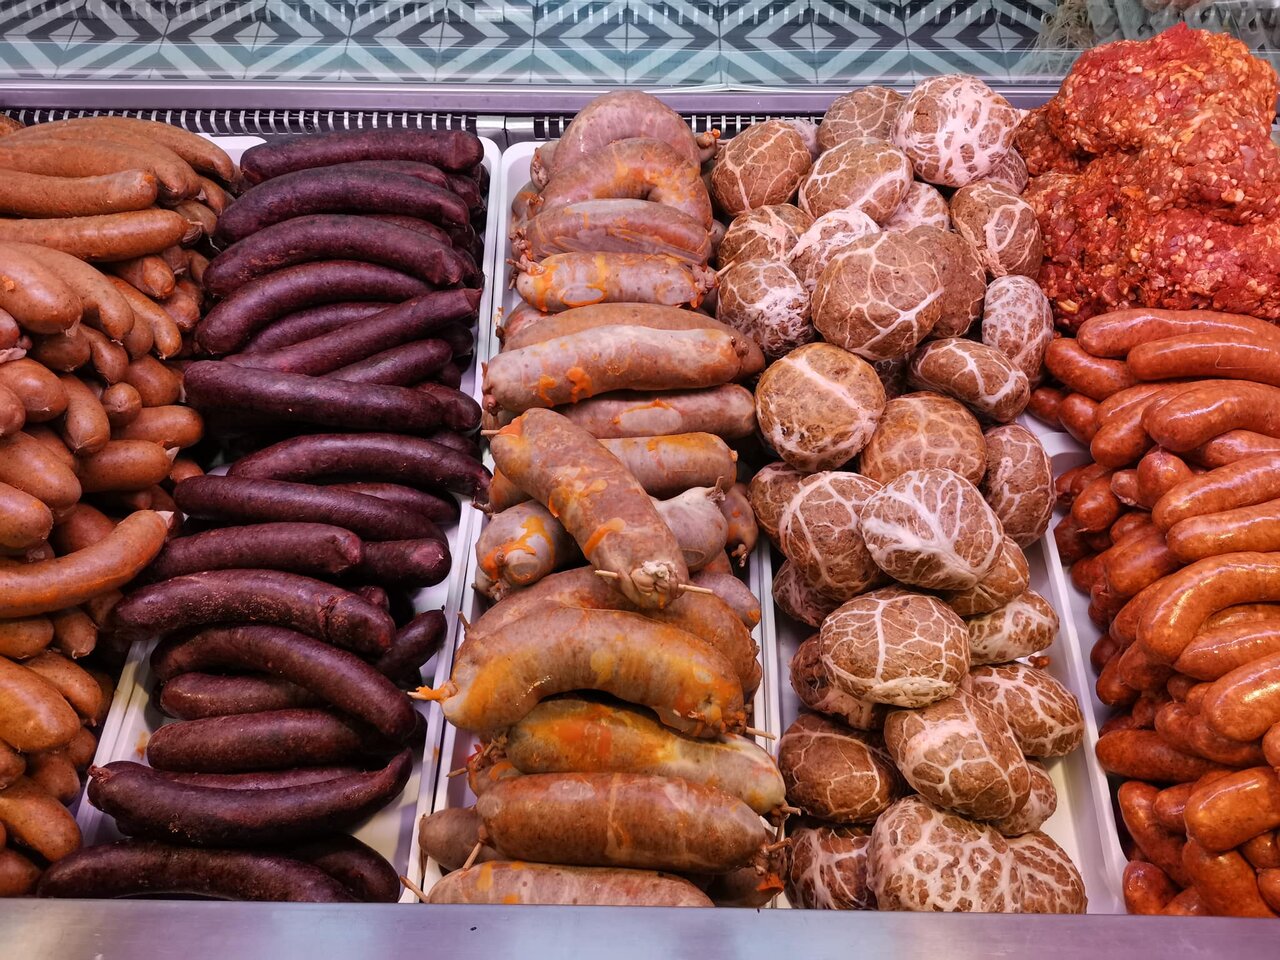 Mađarska, mađarski, meso, mesna tržnica, domaće, mesni proizvodi